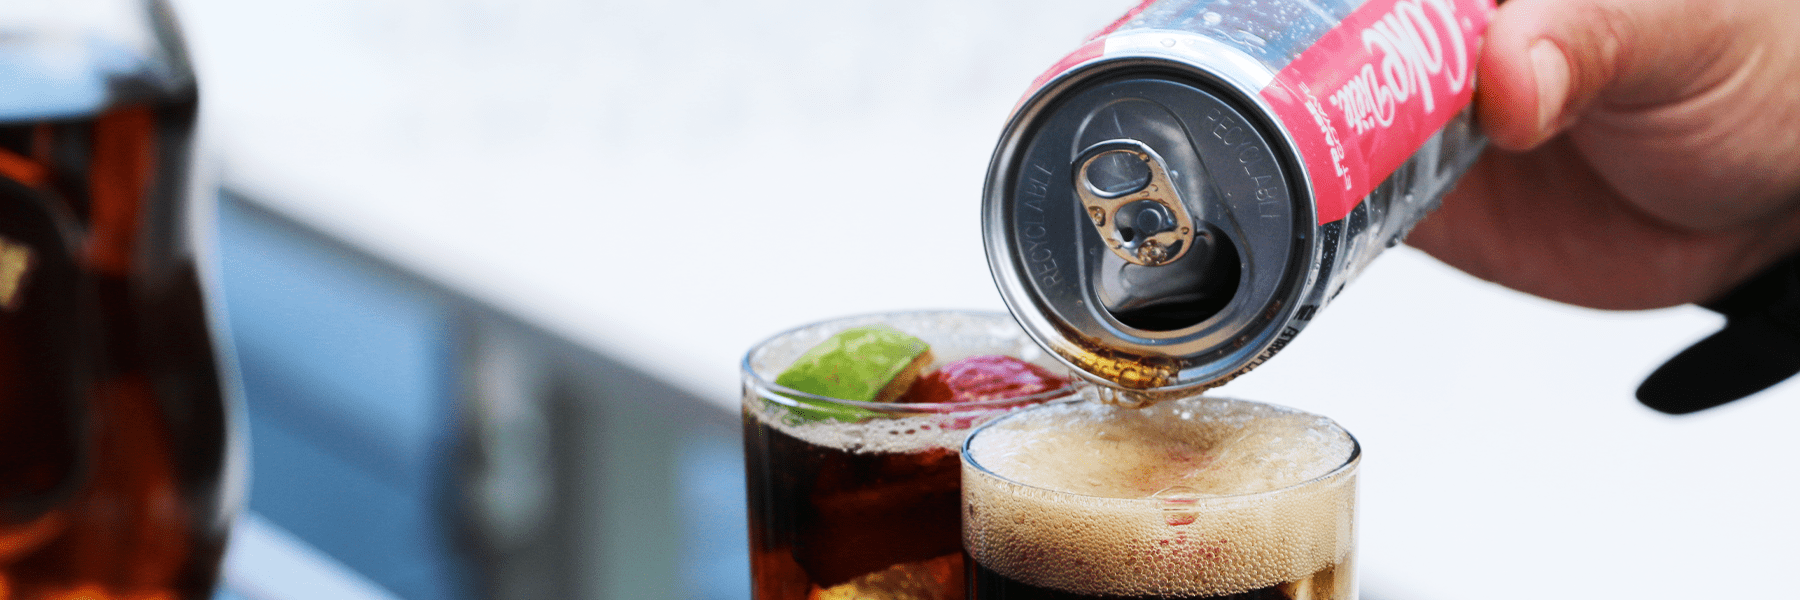 Une main versant du Coke Diète dans un verre